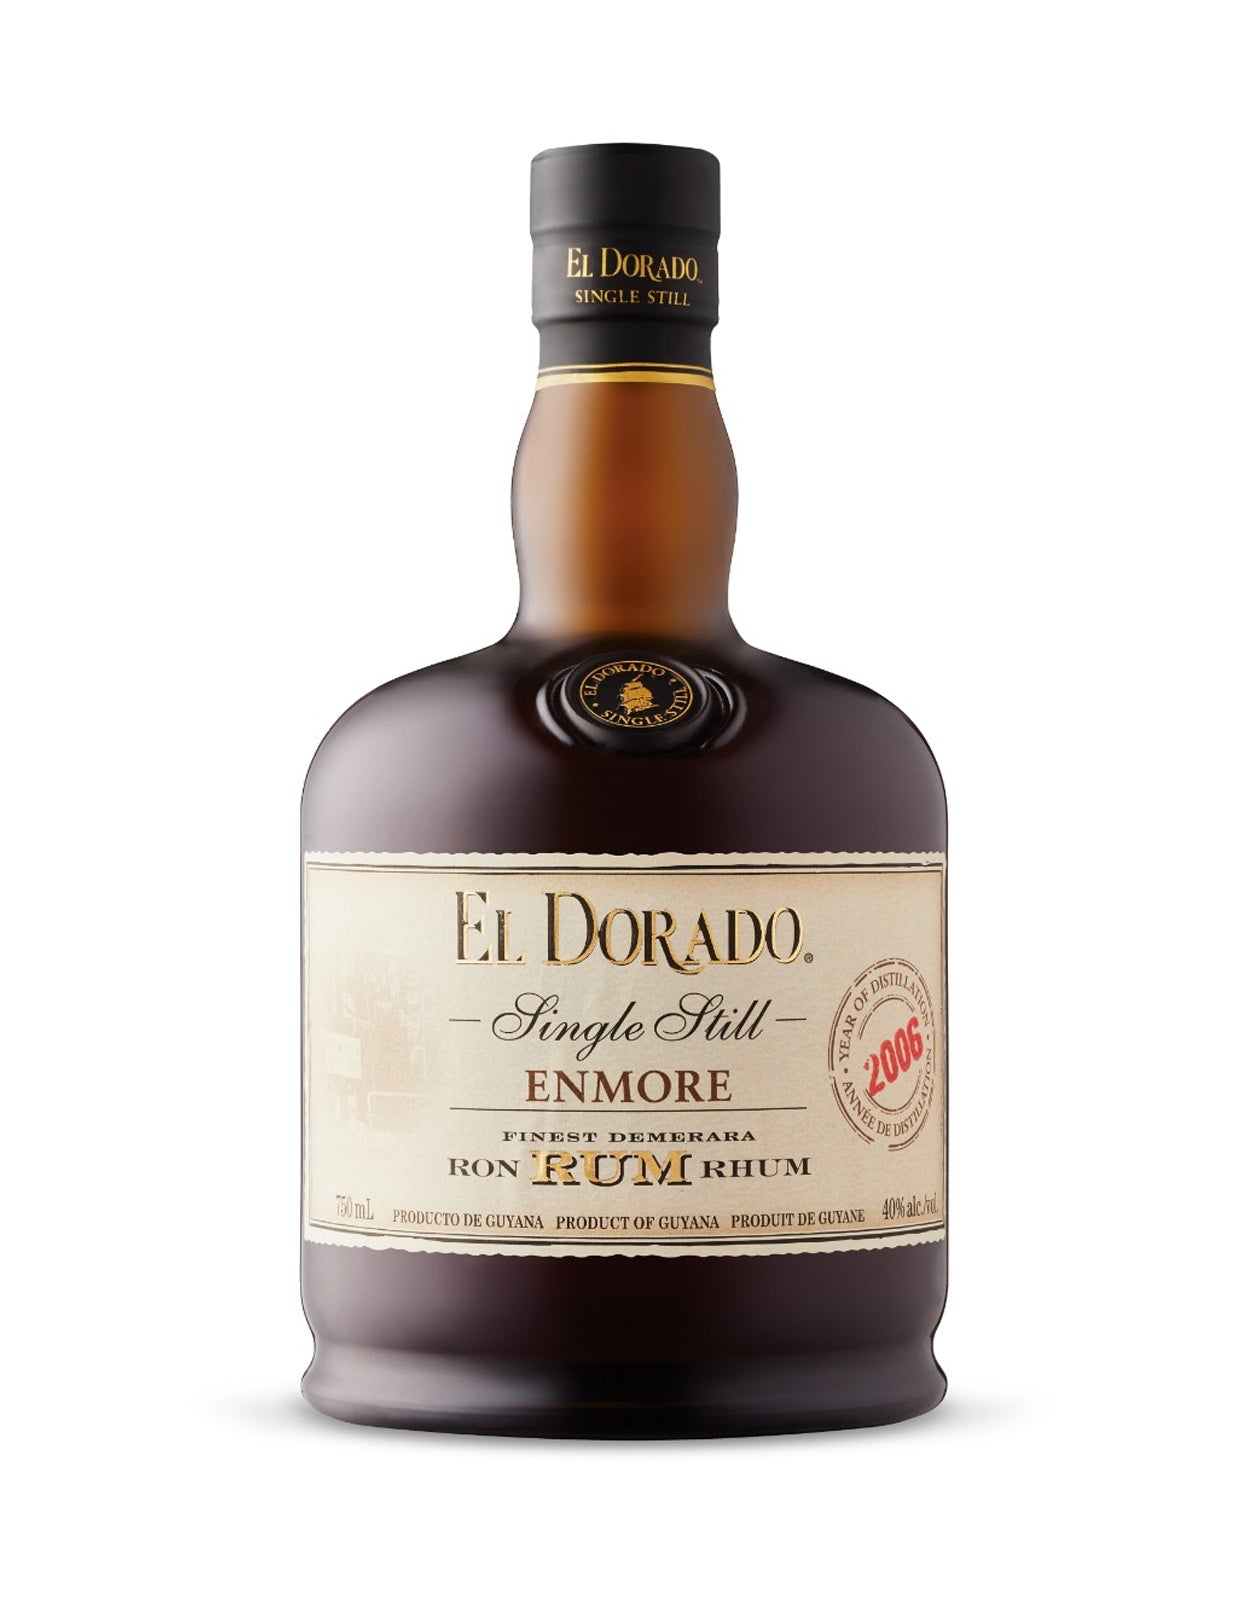 El Dorado Single Still Enmore 2006 Rum